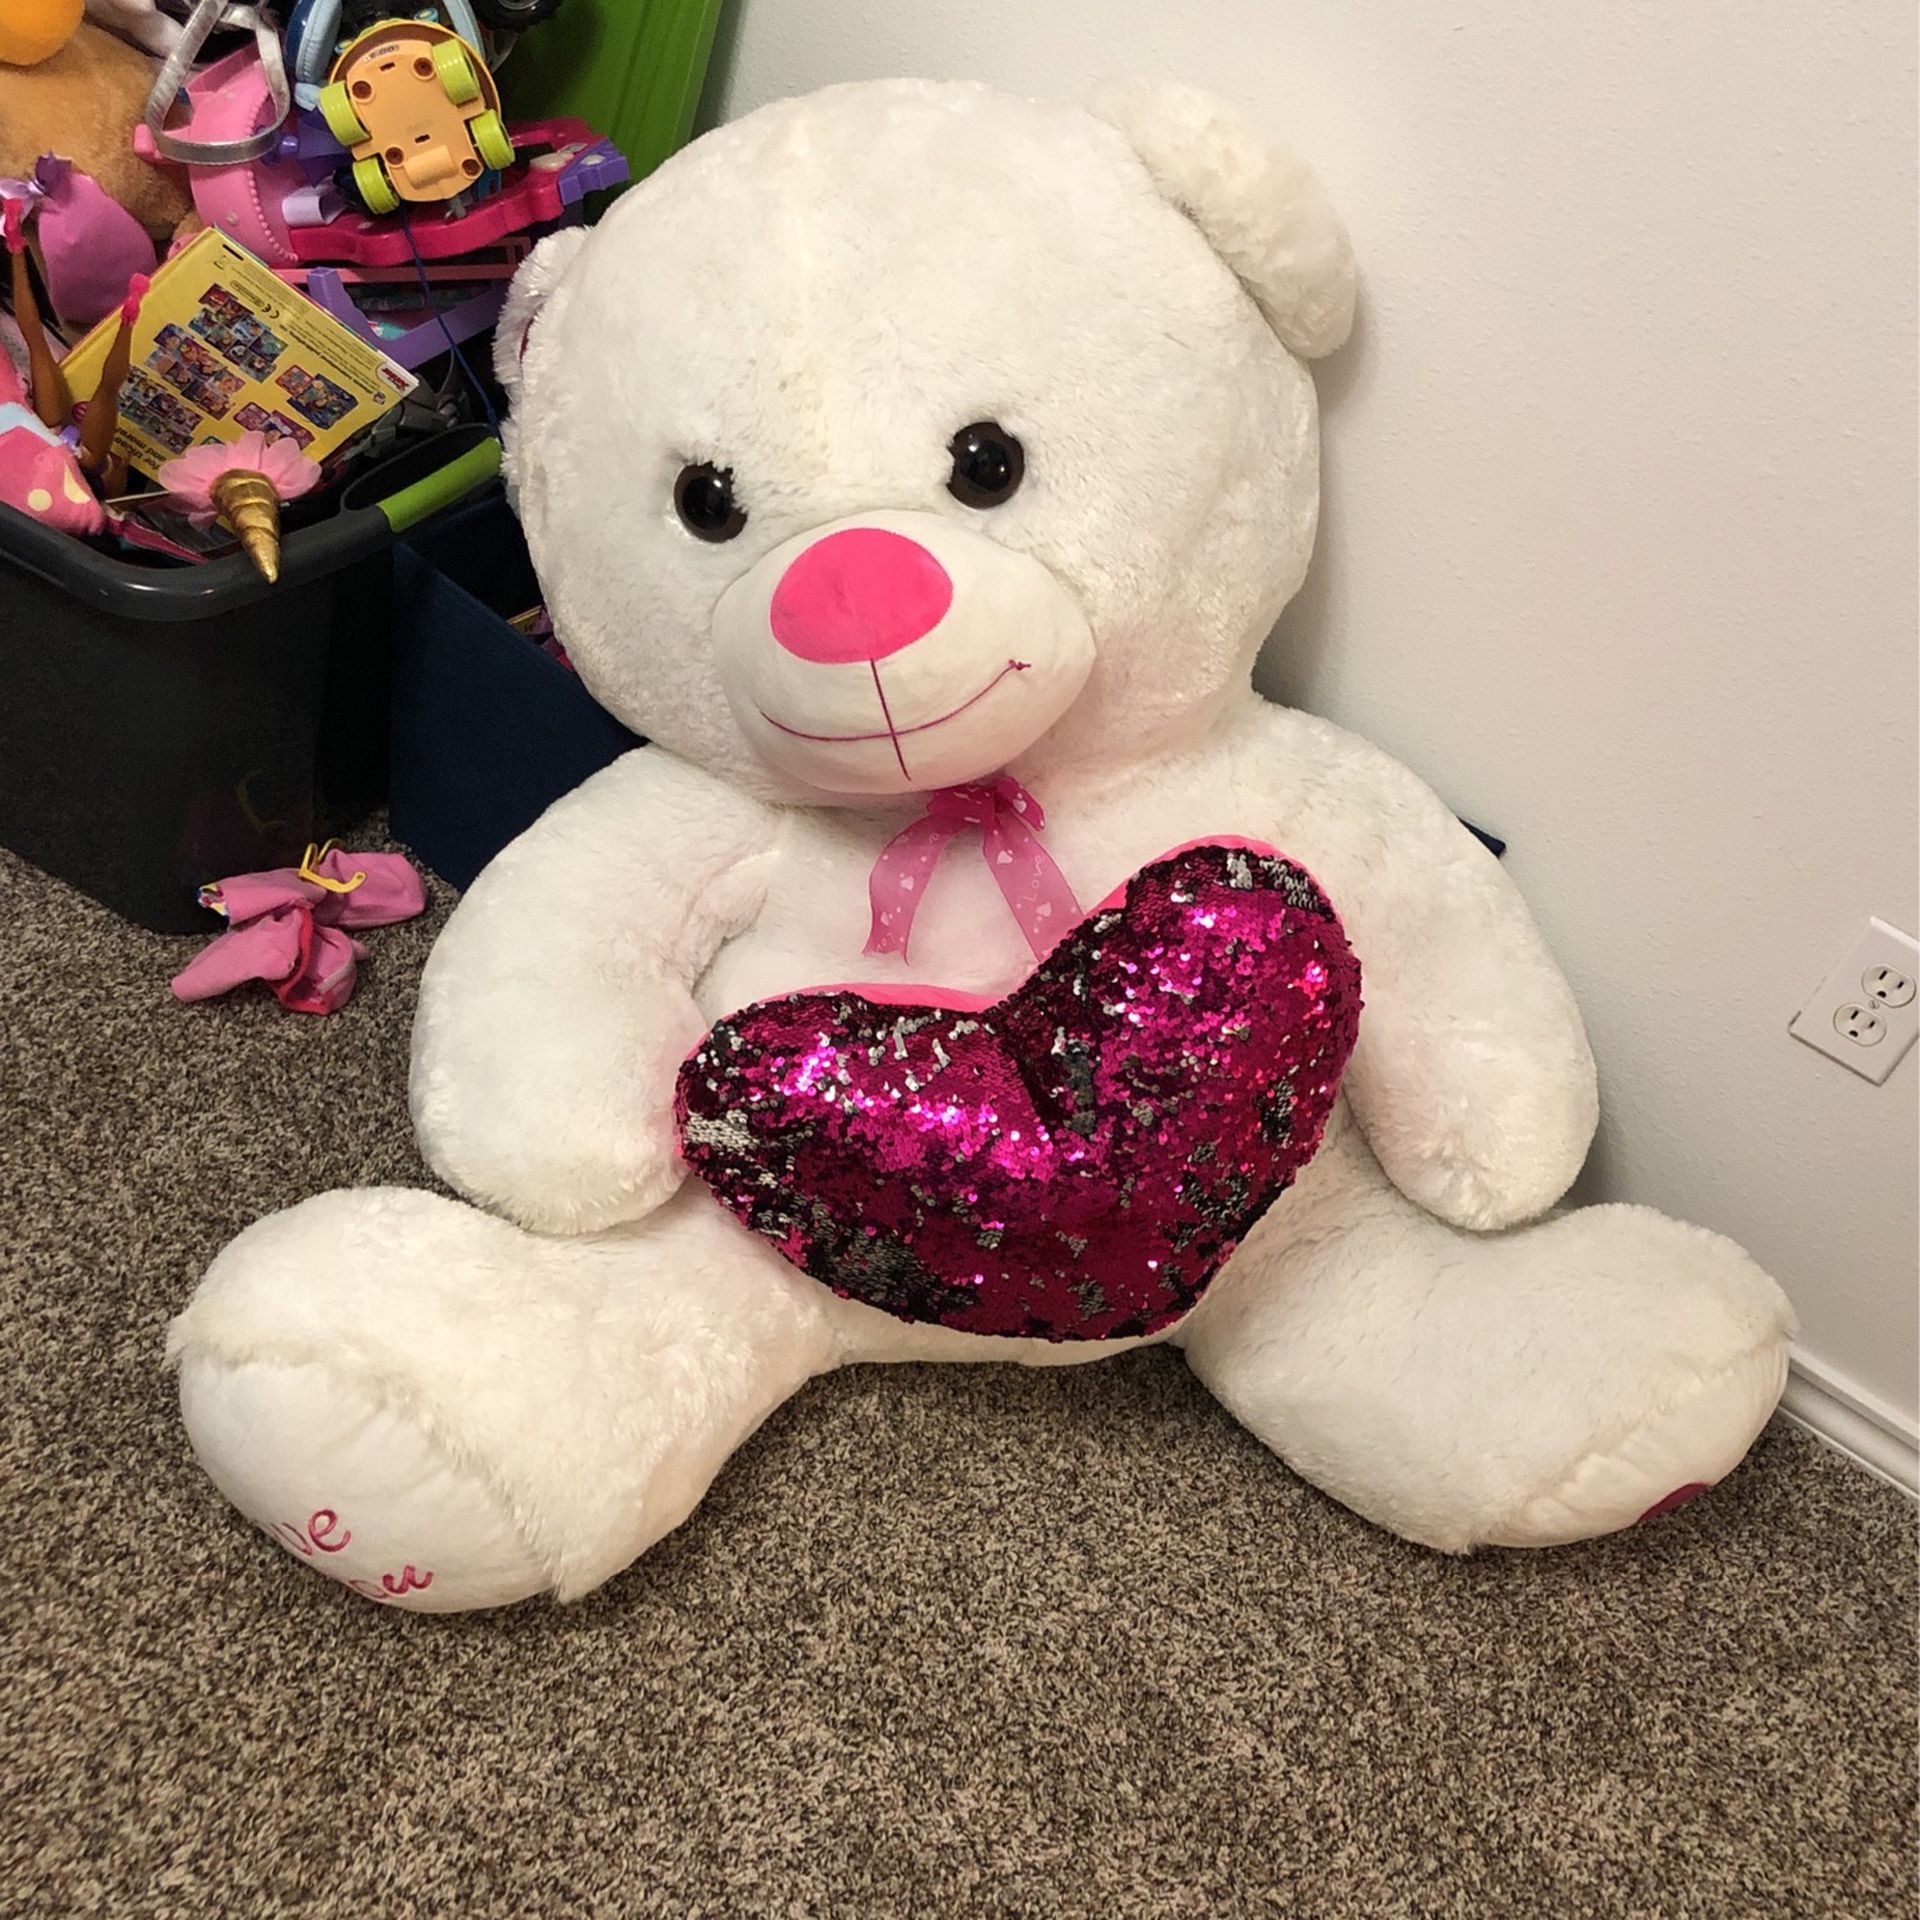 Giant Teddy Bear Valentine’s Day